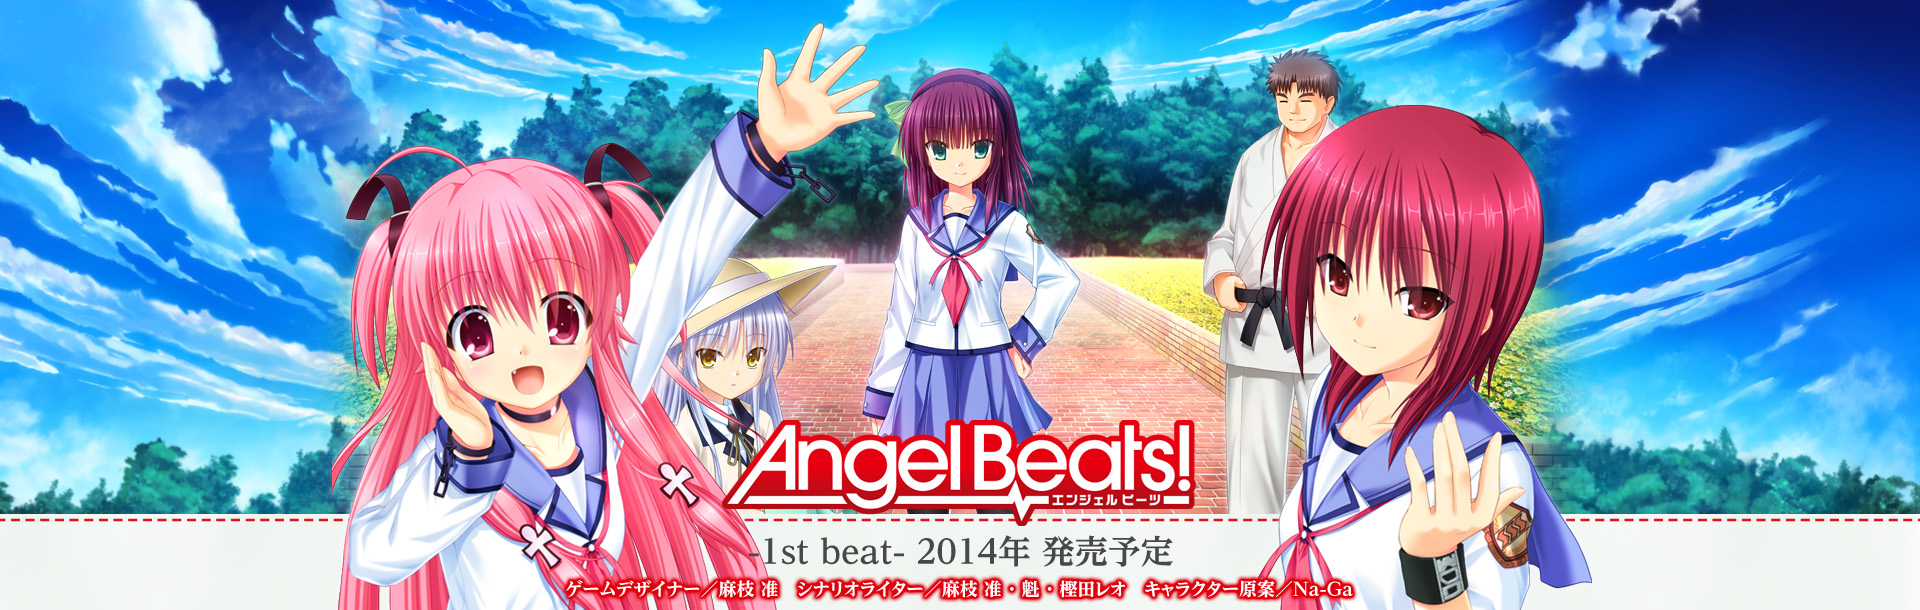 Pcゲーム Angel Beats 1st Beat 公式サイトとスマートフォンゲーム公式サイトが公開 声優 アニメ News